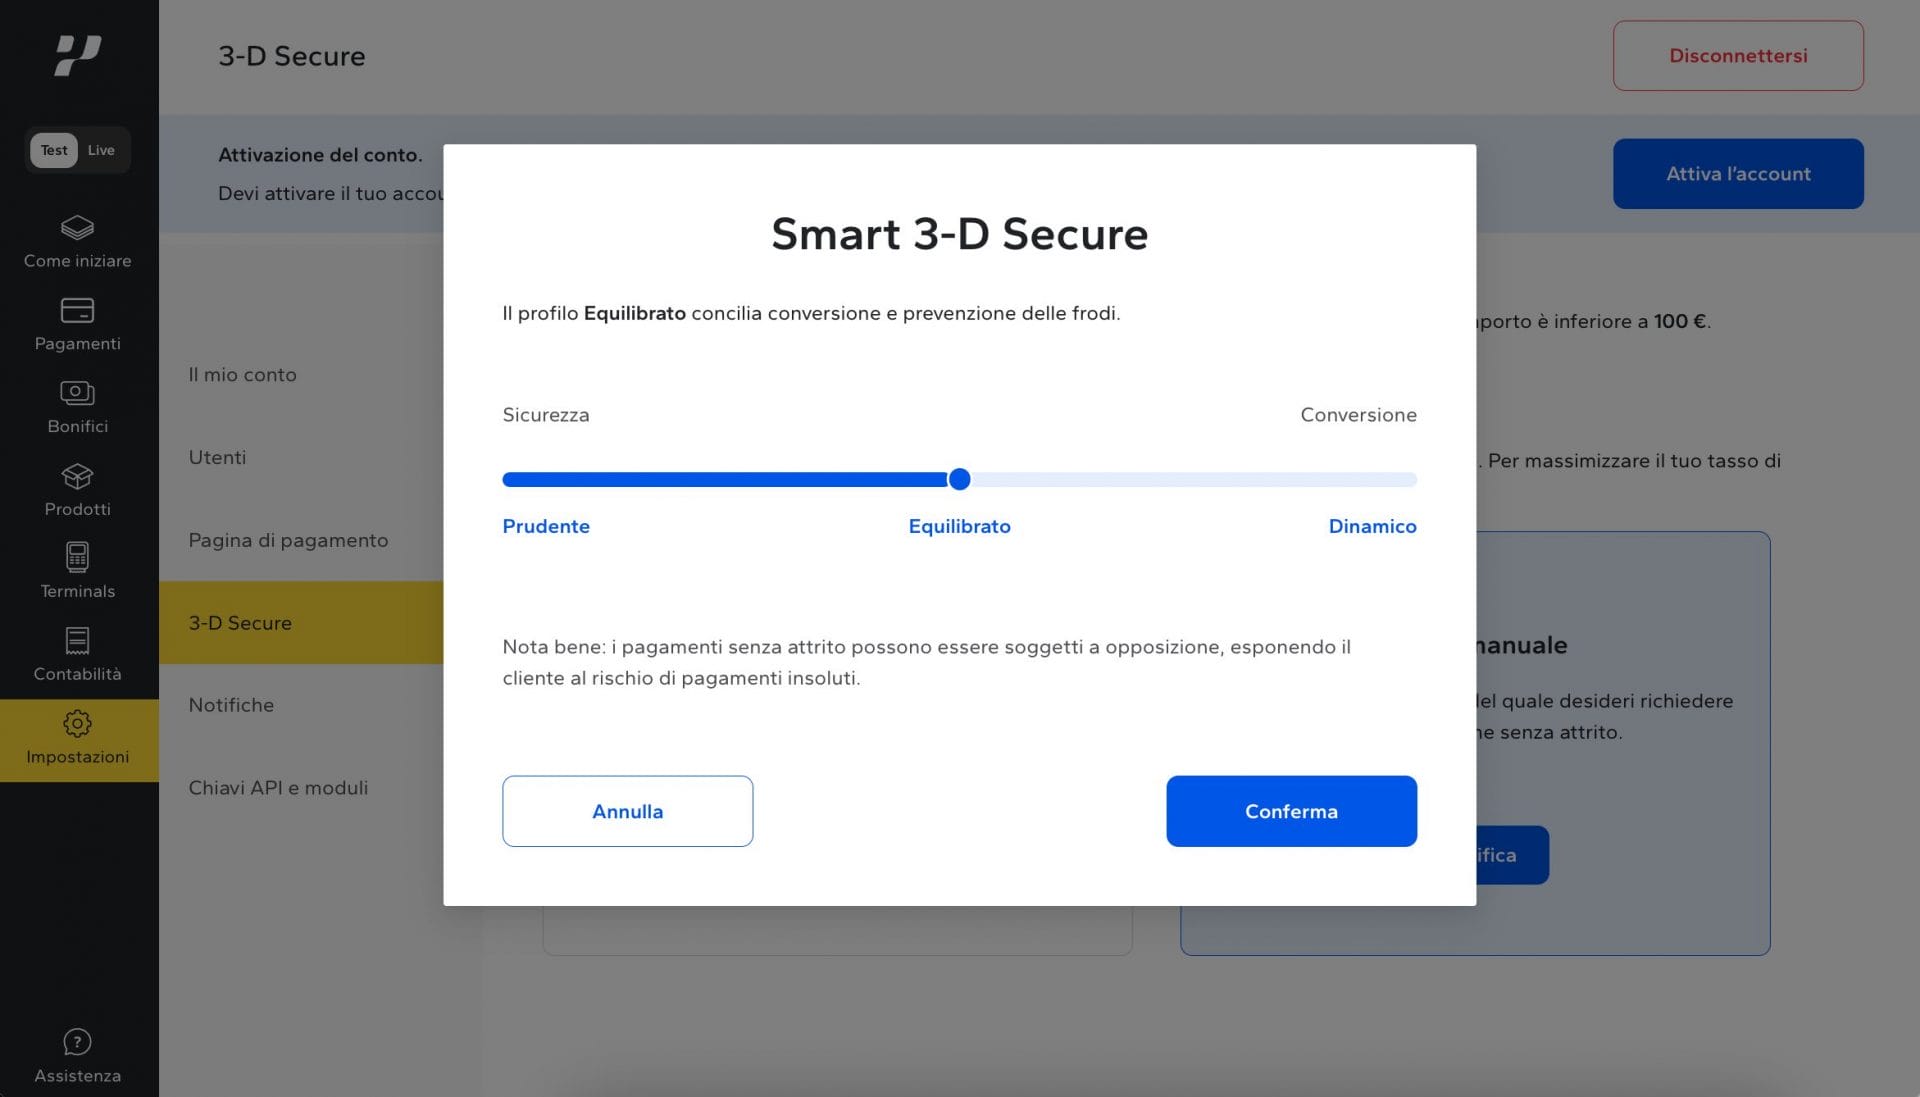 Smart 3-D Secure